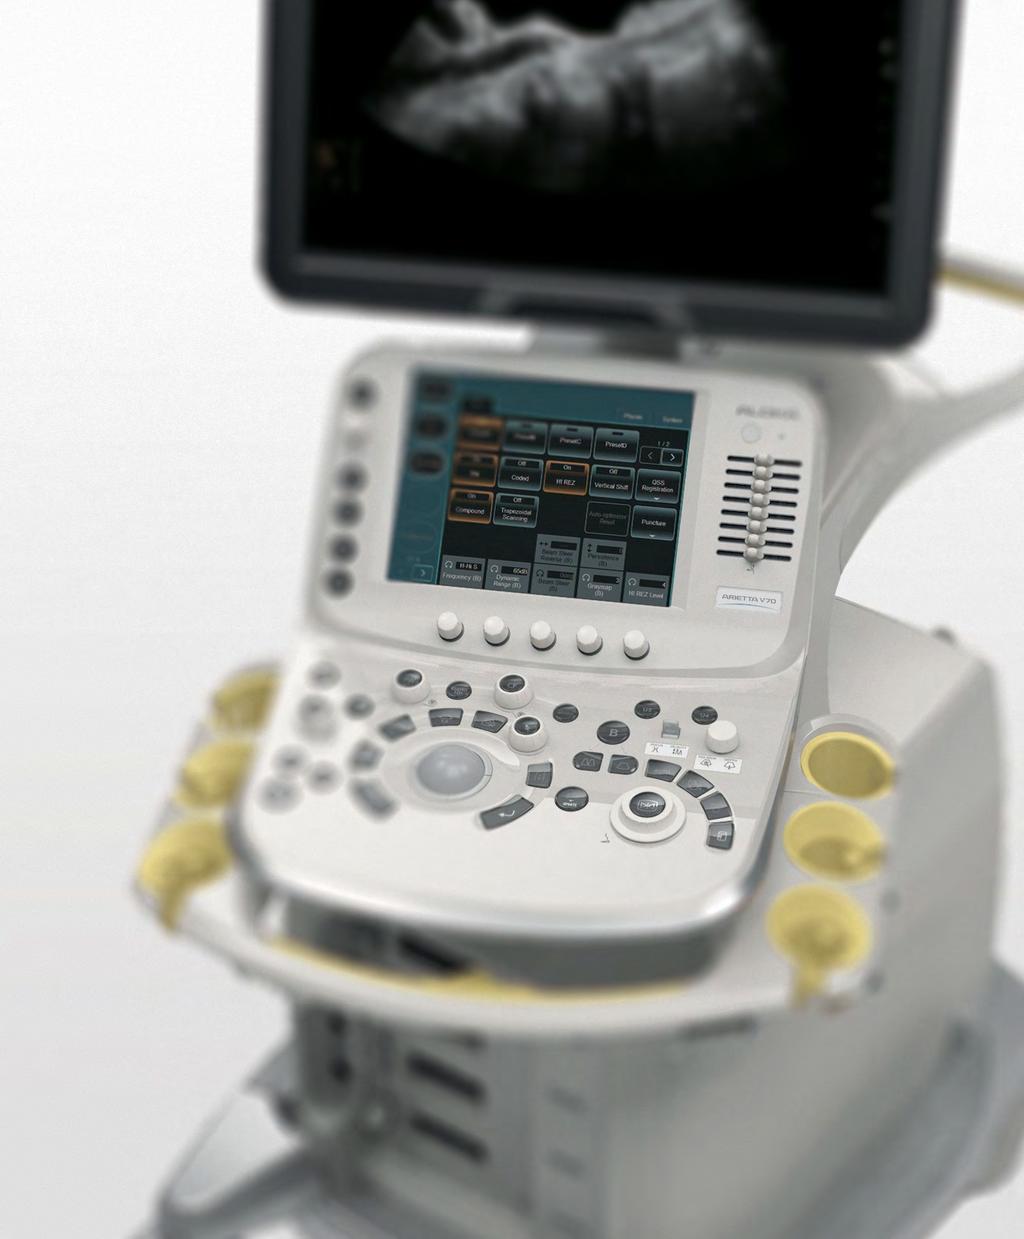 Le tecnologie per l'imaging Clearly Defined, in ARIETTA V70, sono alla base della straordinaria qualità delle immagini diagnostiche prodotte Le prestazioni cliniche di un sistema diagnostico a